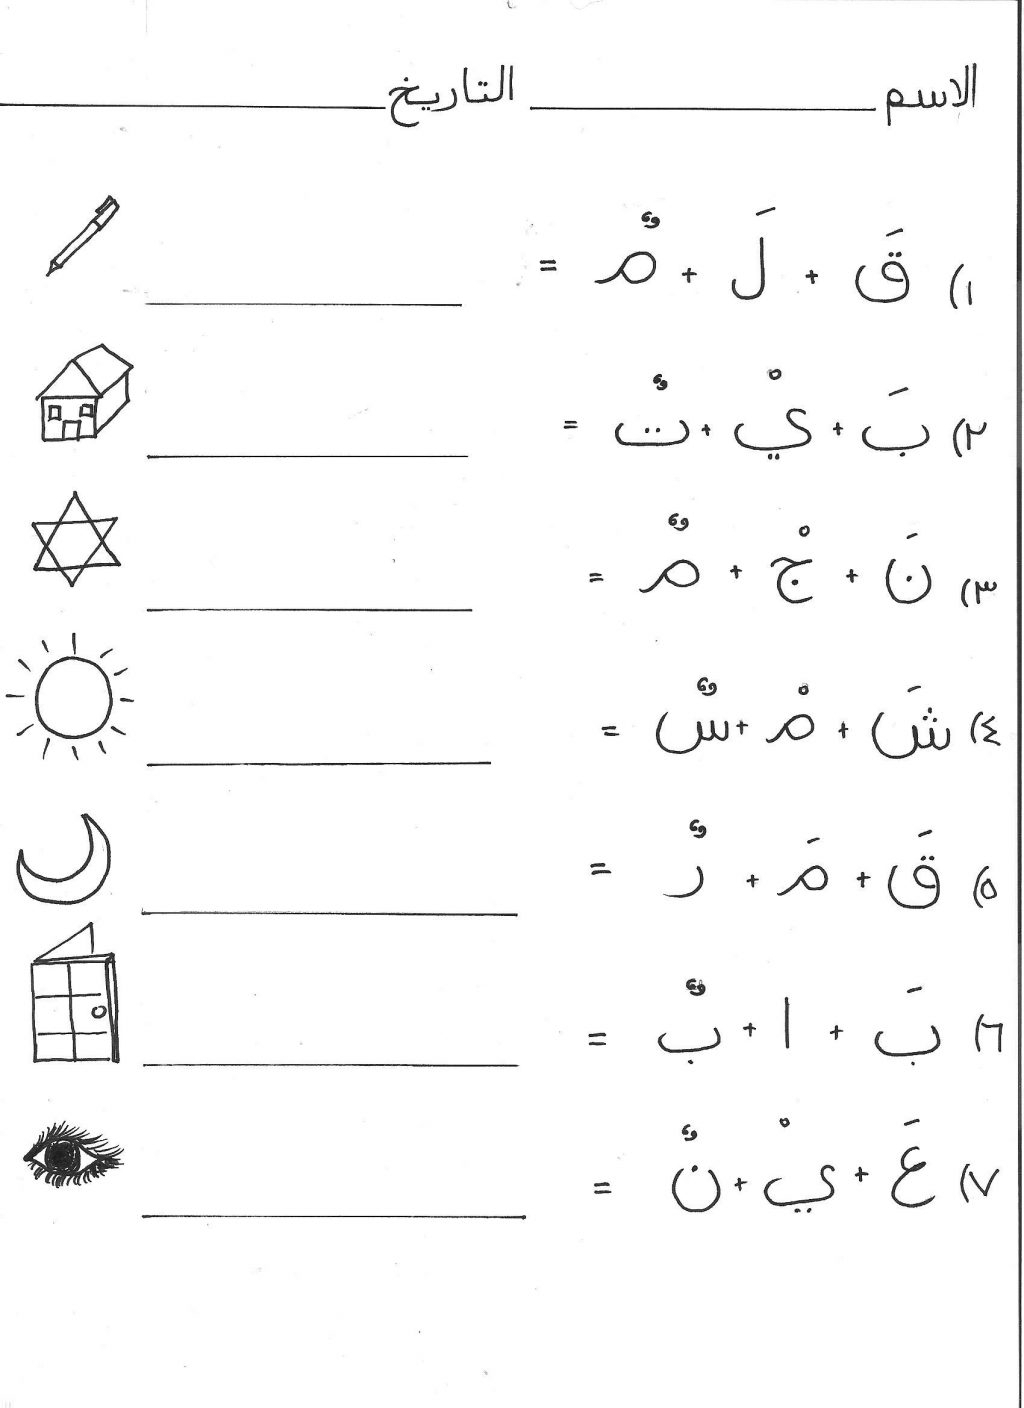 Worksheet For Kindergarten In Urdu Printable Worksheets And